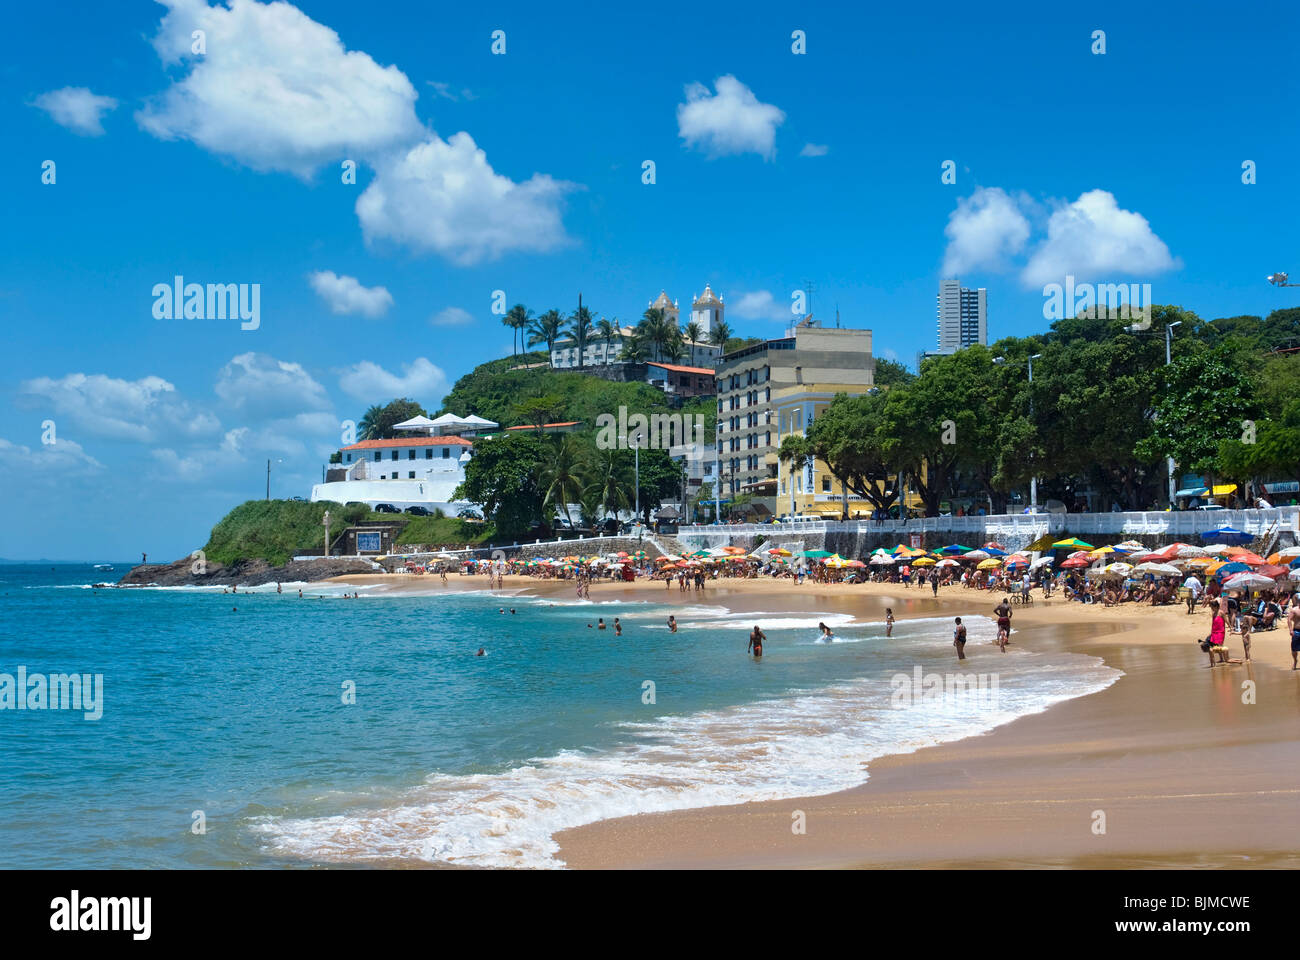 Porto da barra Beach, Salvador, Bahia, Brazil Stock Photo